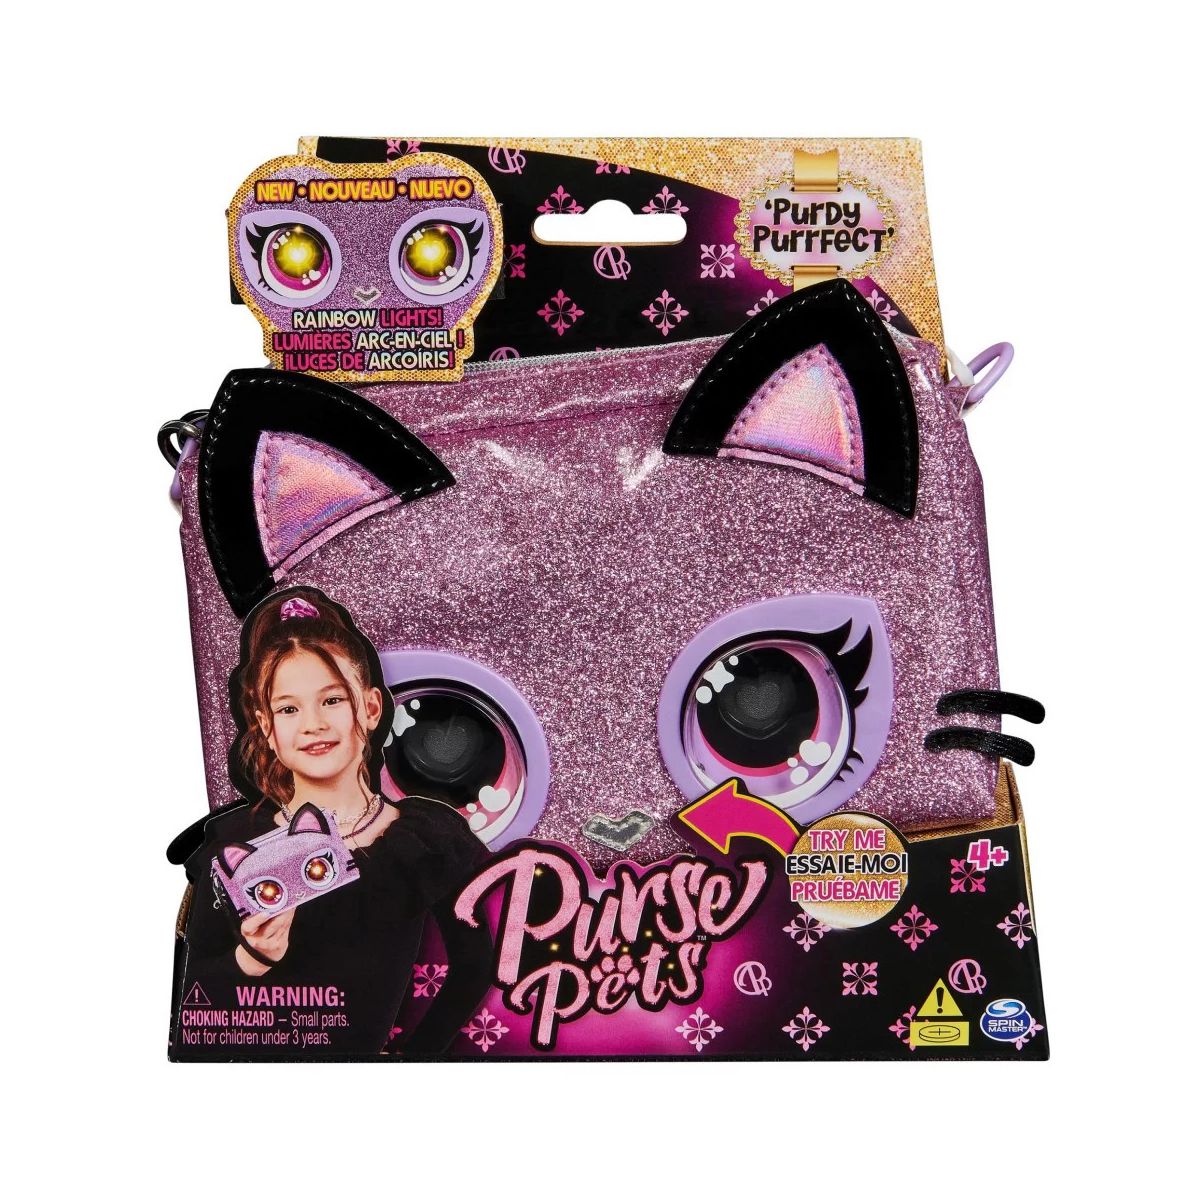 Torebka Purse Pets - Interaktywna torebka Kotek Purdy Purrfect ze świecącymi oczami Spin Master (6067884)